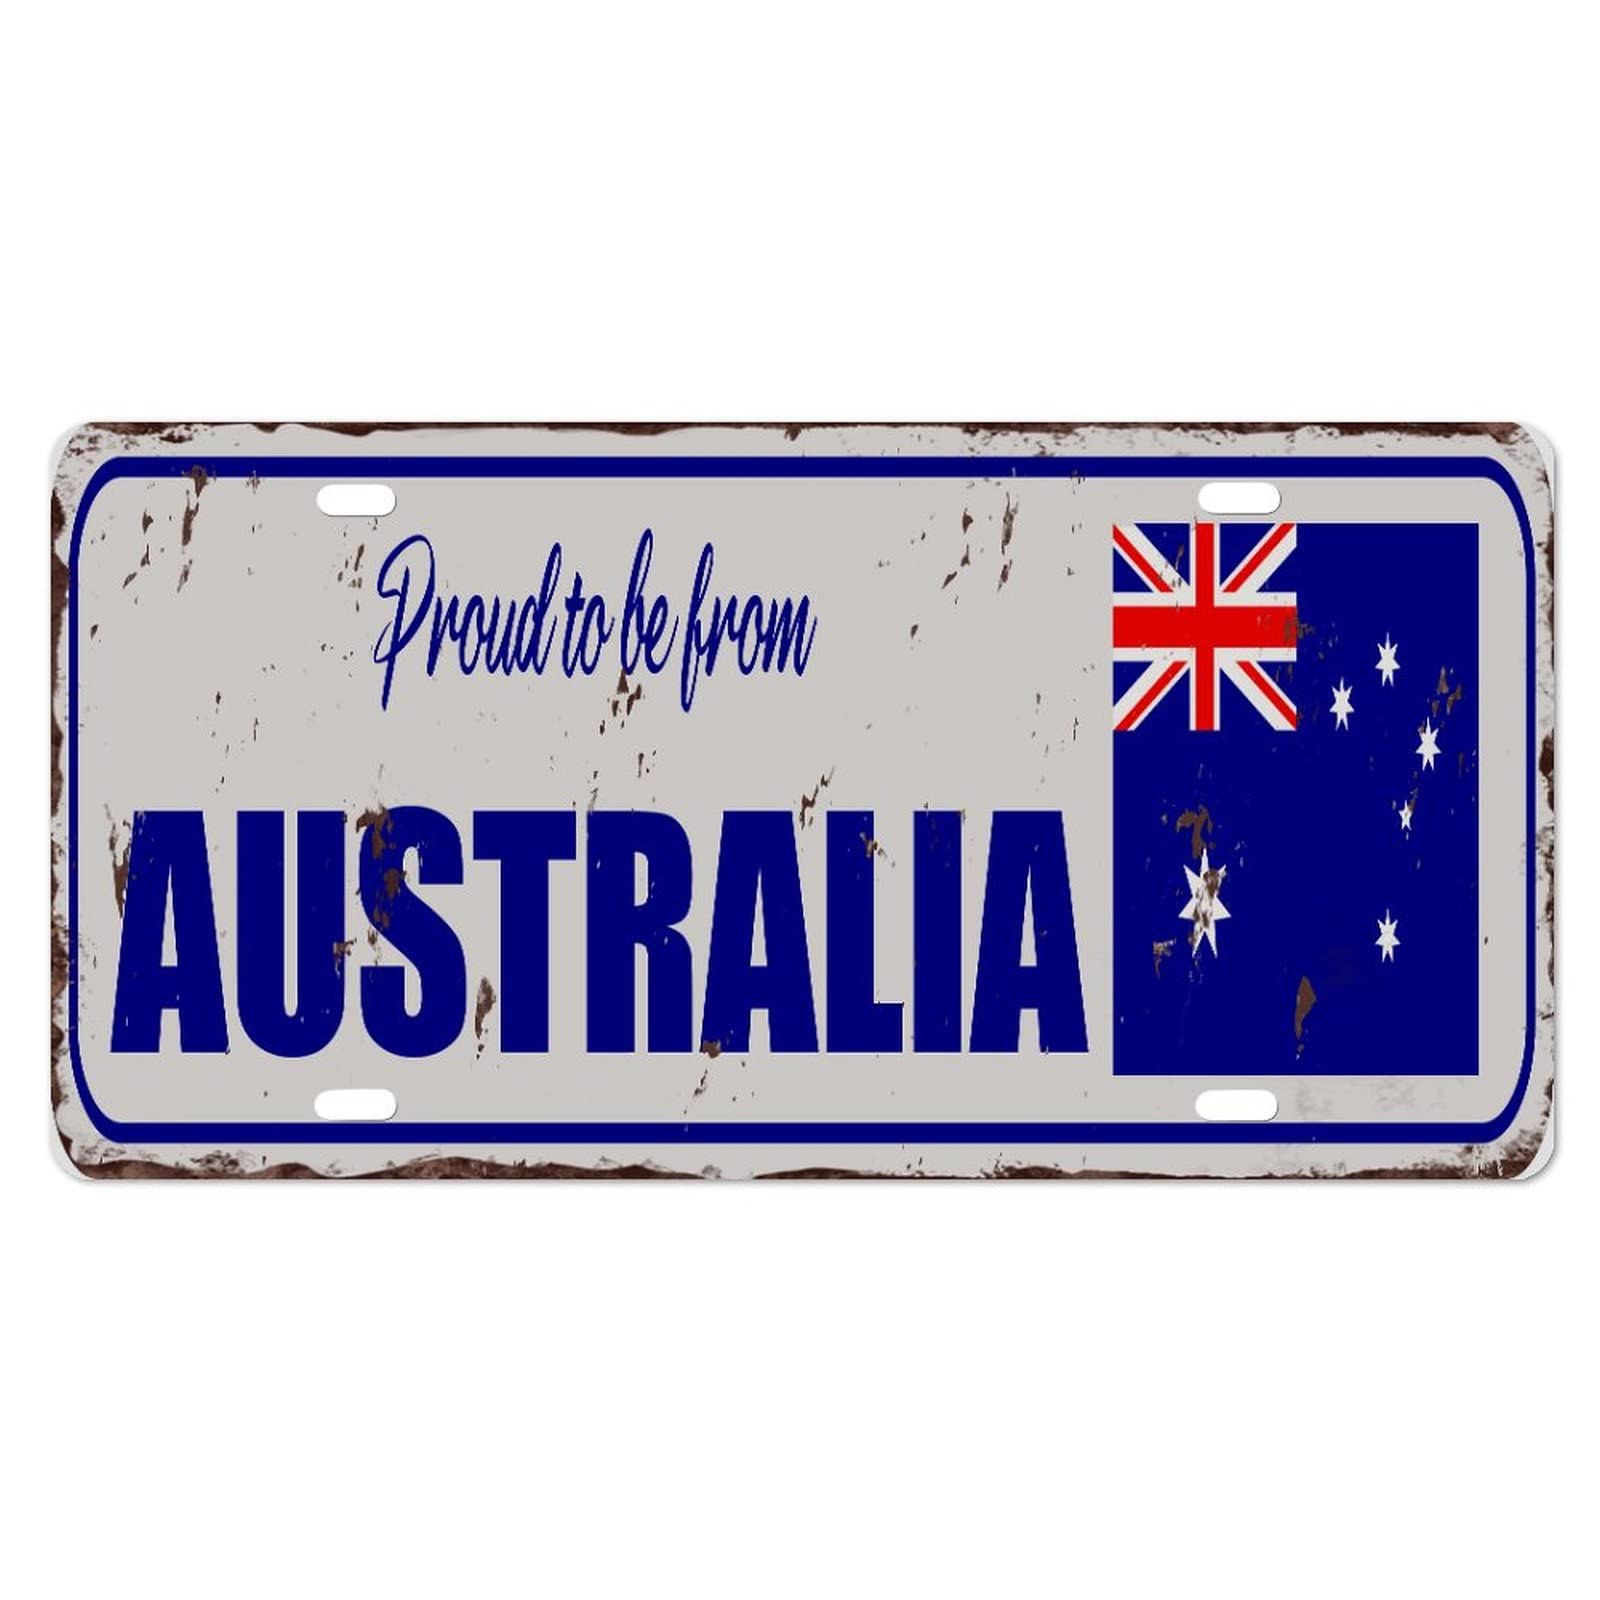 Yelolyio Australien-Kennzeichen für die Vorderseite des Autos, Größe 15,2 x 30,5 cm, rostfrei, stolz, aus Australien, Metall-Kennzeichen, australische Nationalflagge, Aluminium, Neuheit, von Yelolyio